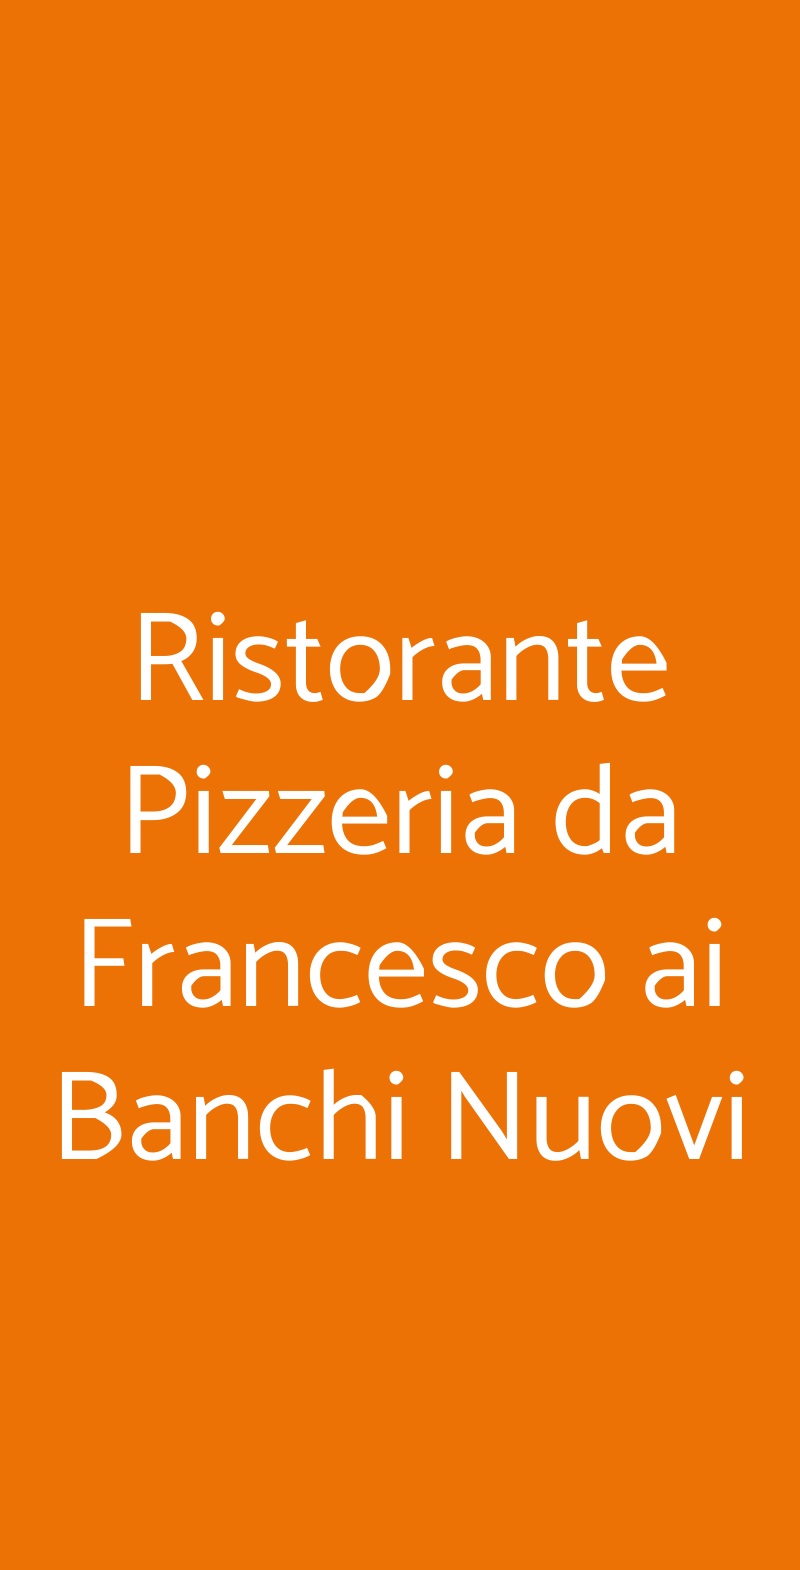 Ristorante Pizzeria da Francesco ai Banchi Nuovi Roma menù 1 pagina